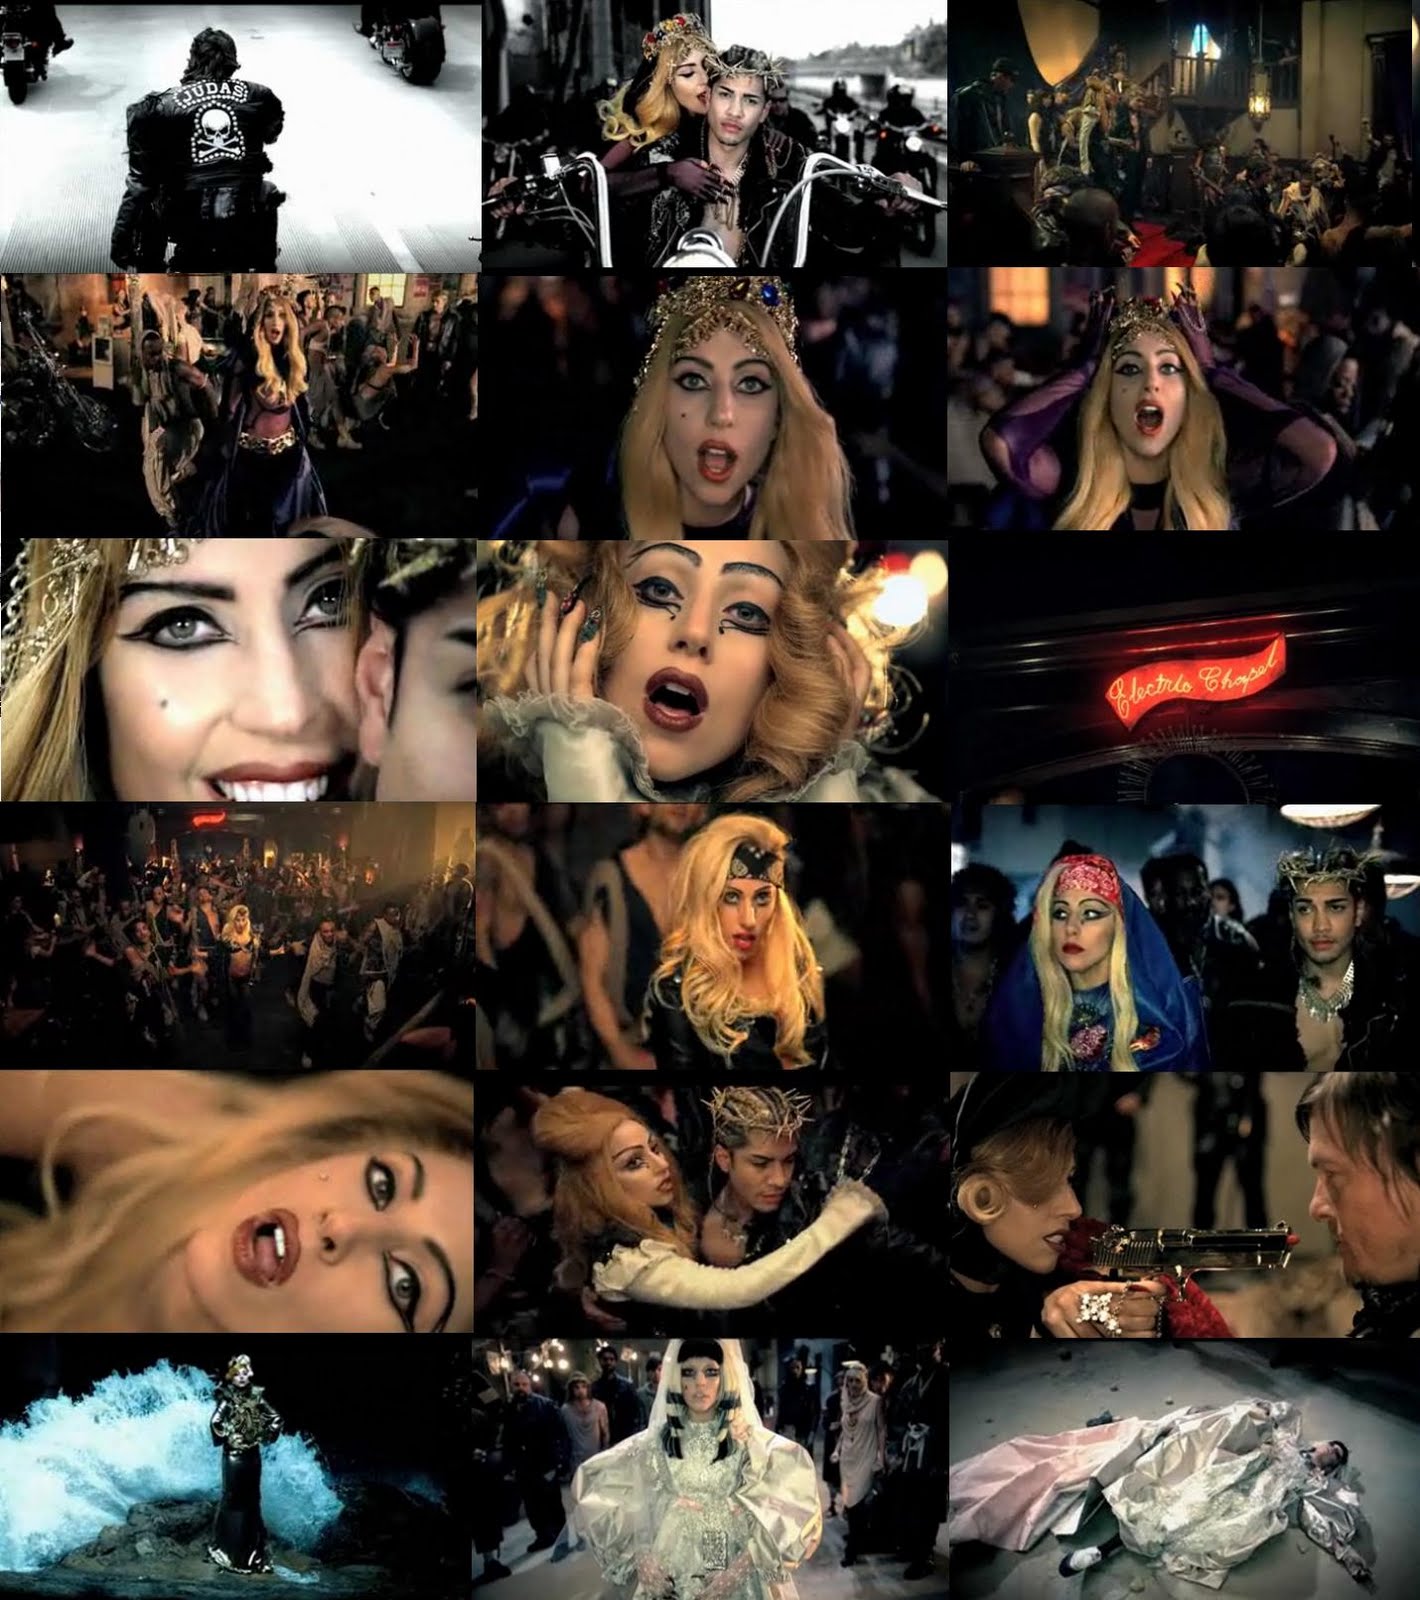 http://4.bp.blogspot.com/-ox-tNdDueV8/TcLUhRuvZUI/AAAAAAAAAG4/W3IUnni-9EU/s1600/Lady+Gaga_Judas4.JPG